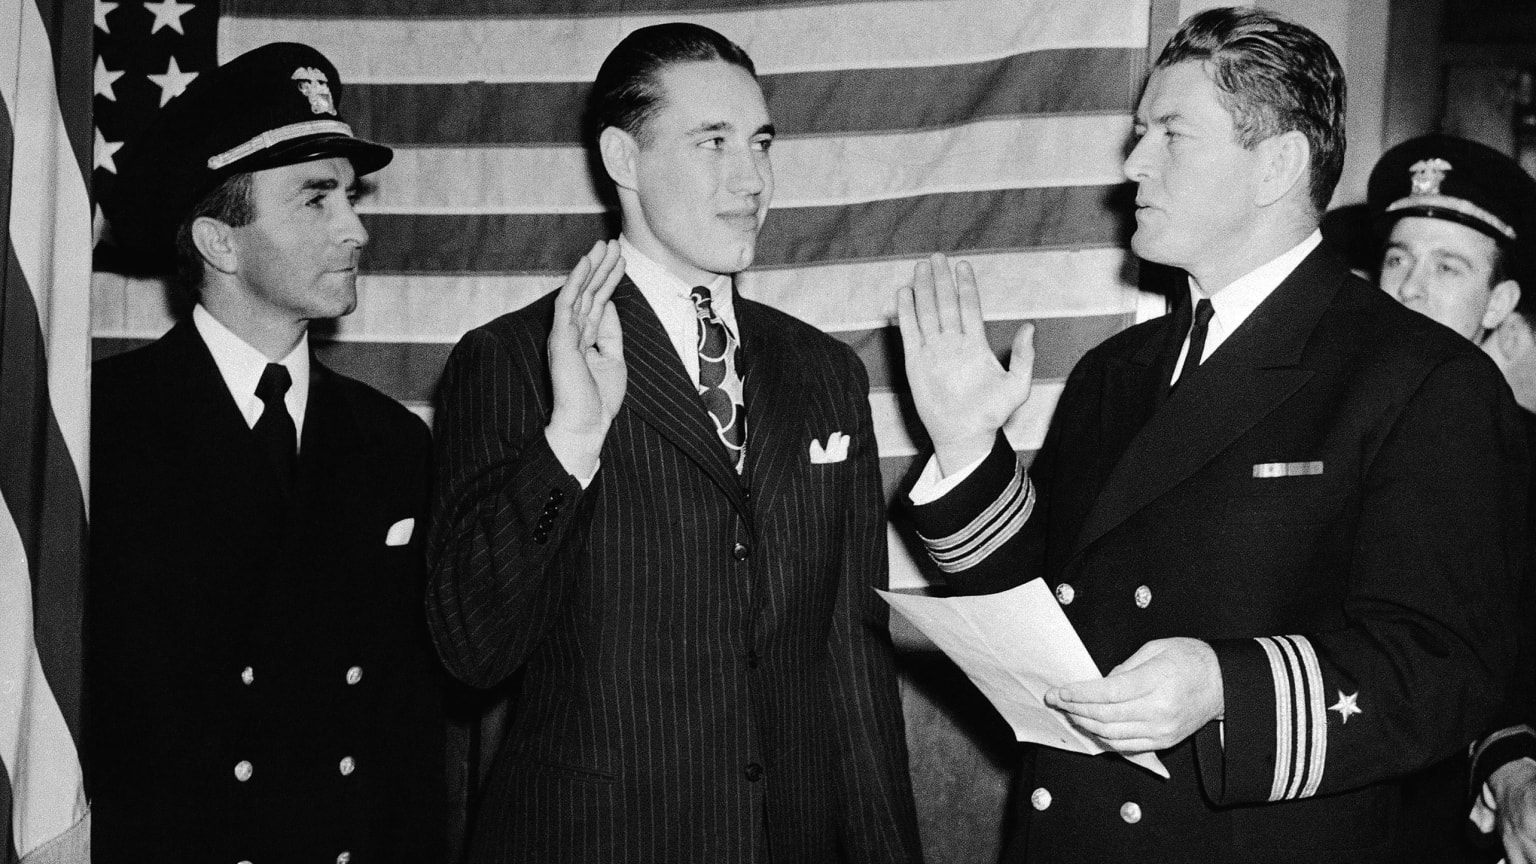 Bob Feller takes an oath as he enlists in the Navy